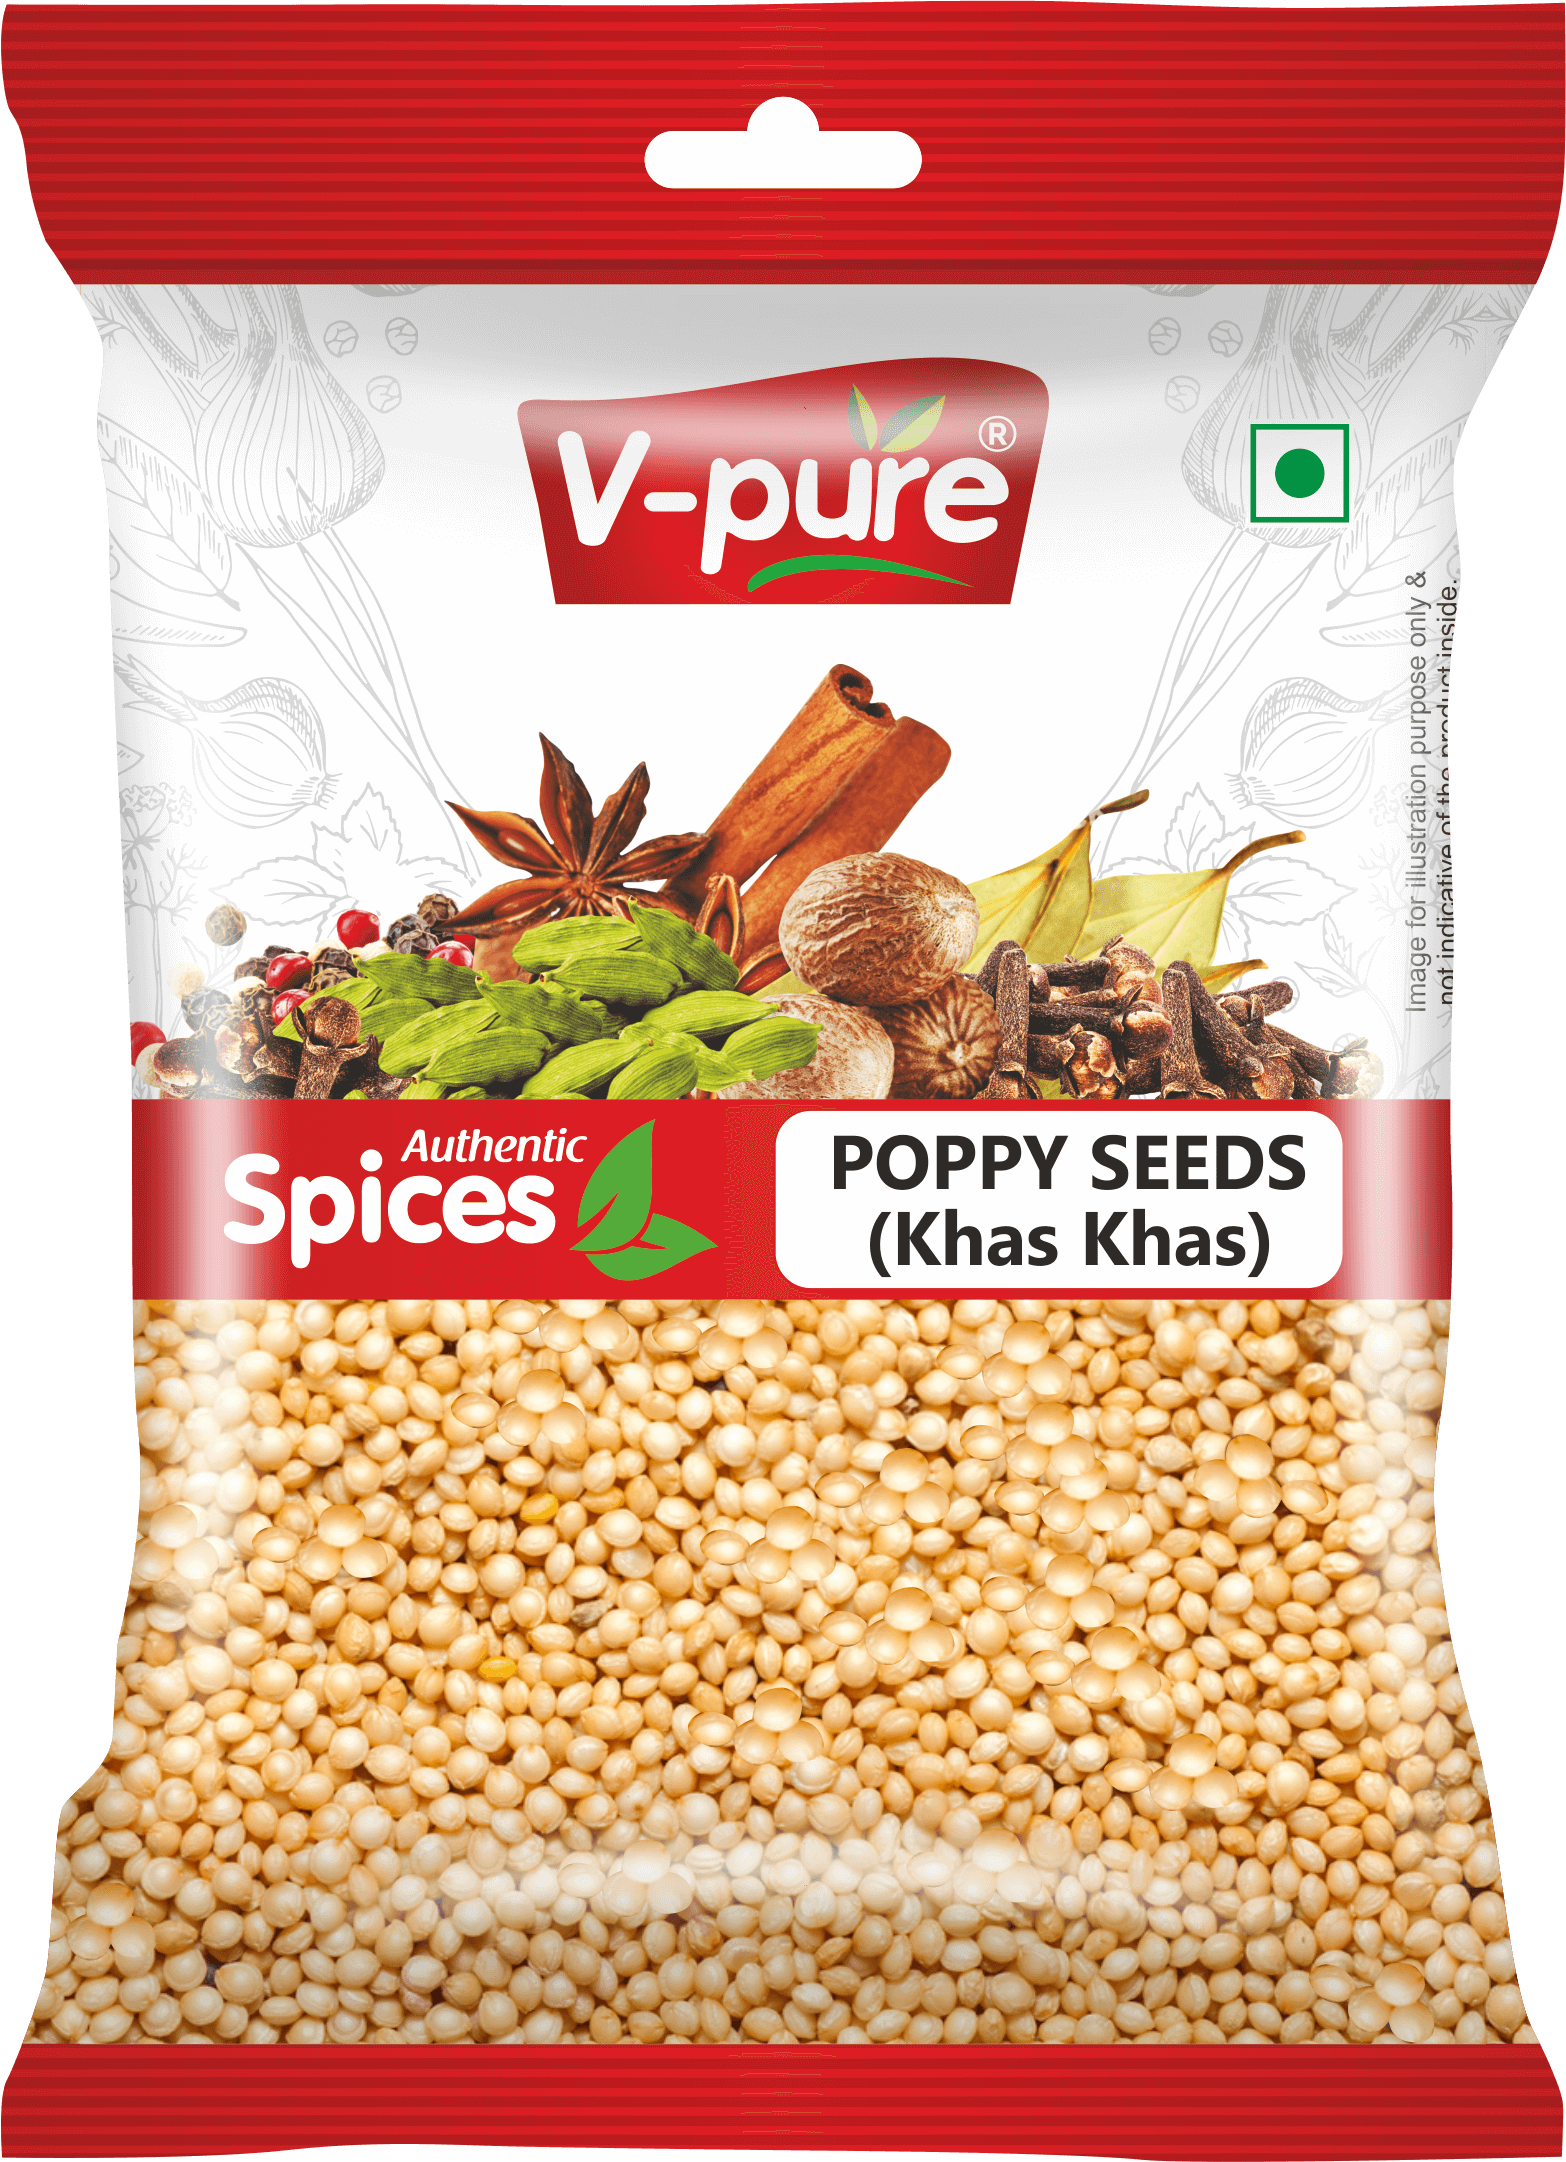 V-pure Fresh Khas Khas - Poppy Seeds